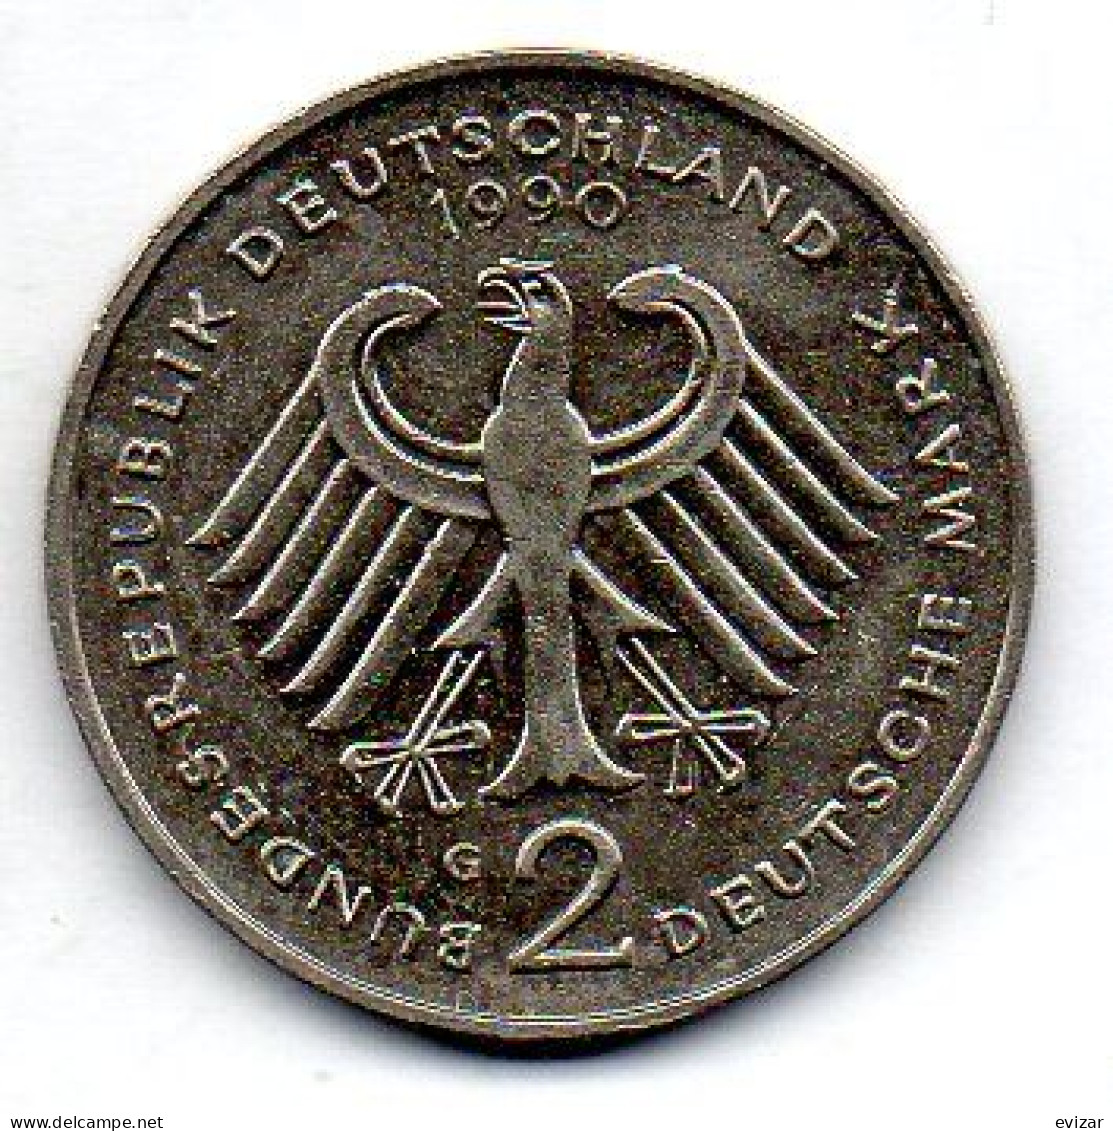 GERMANY - FEDERAL REPUBLIC, 2 Mark, Copper-Nickel, Year 1990-G, KM # 175 - 2 Mark